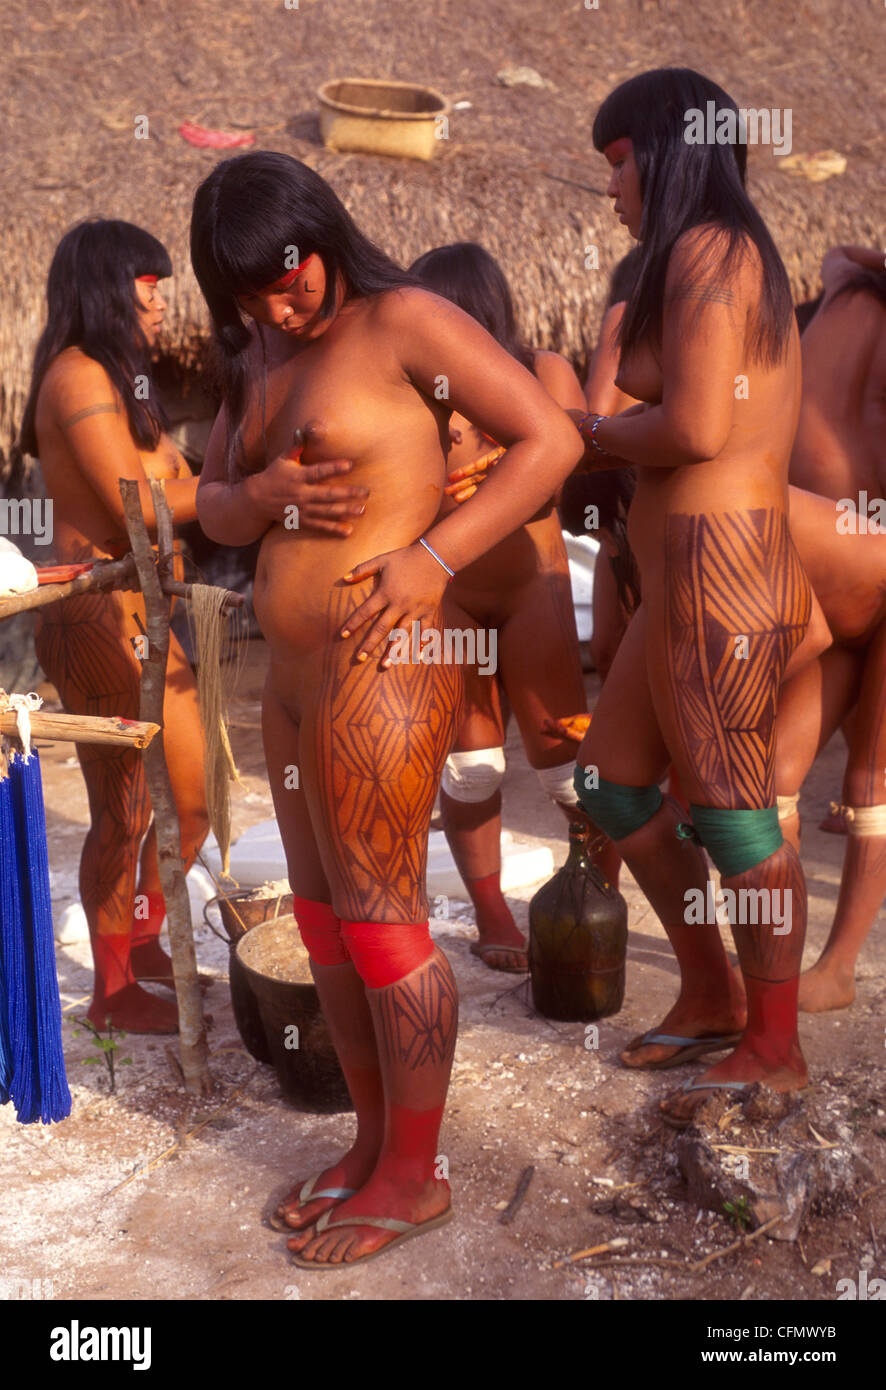 Дикое племя из амазонки жестоко трахнуло туристов